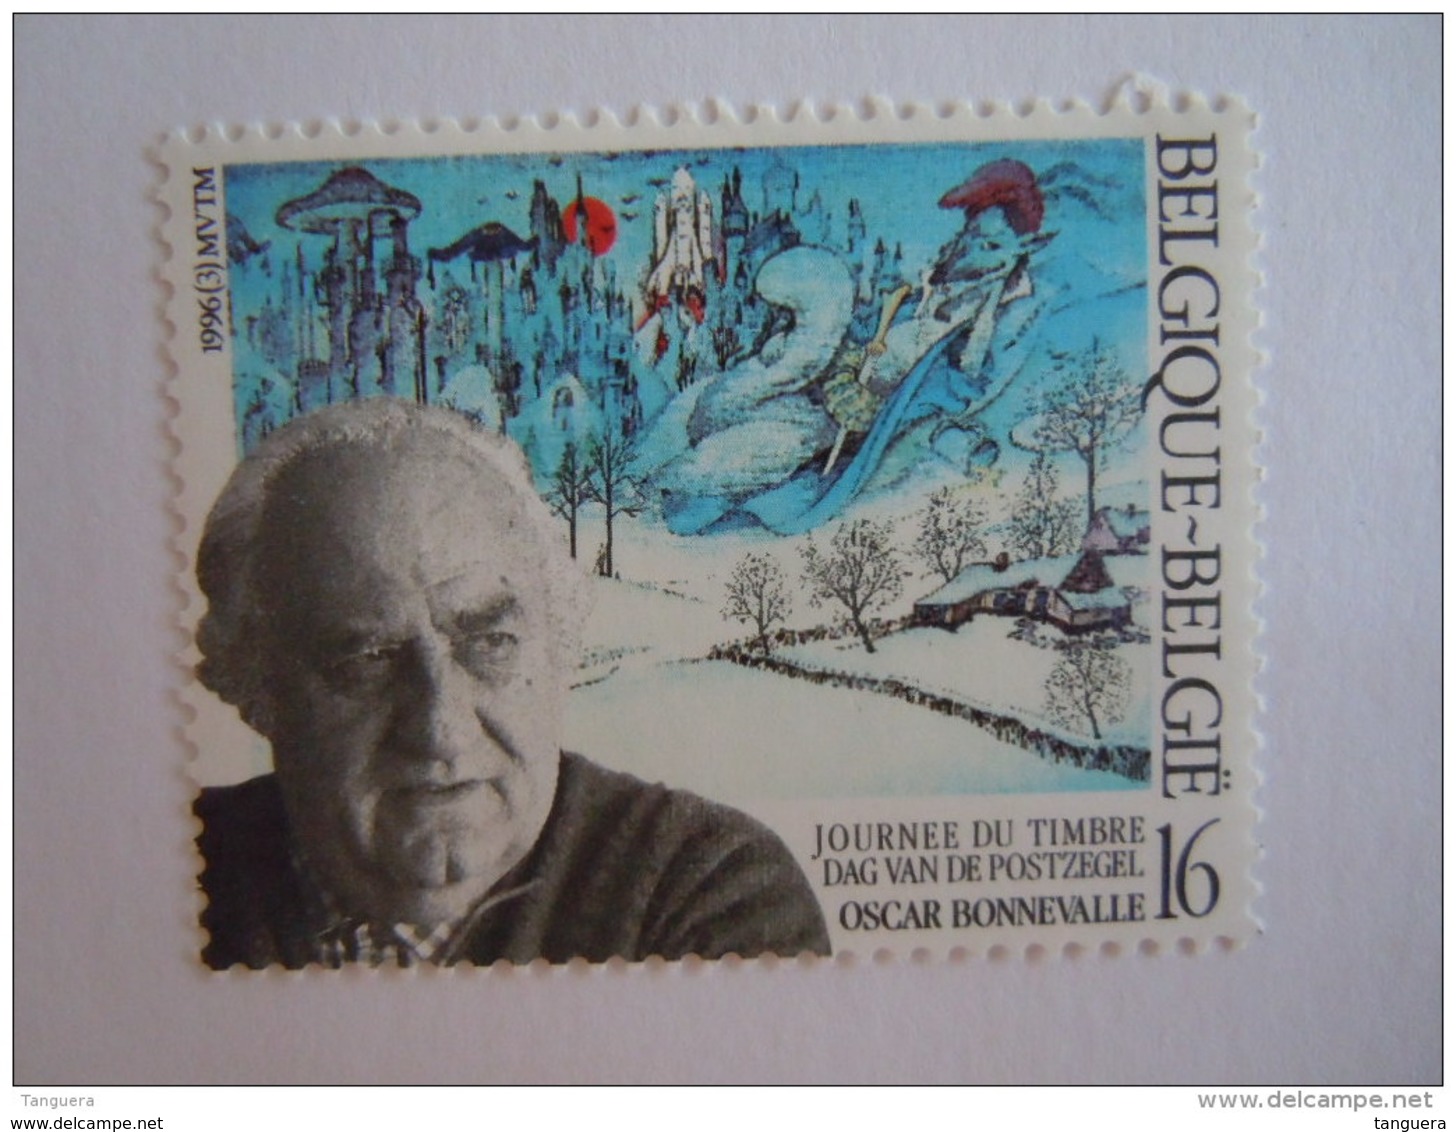 België Belgique 1996 Oscar Bonnevalle Dag Van De Postzegel Journée Du Timbre Cob 2629 MNH ** - Ungebraucht